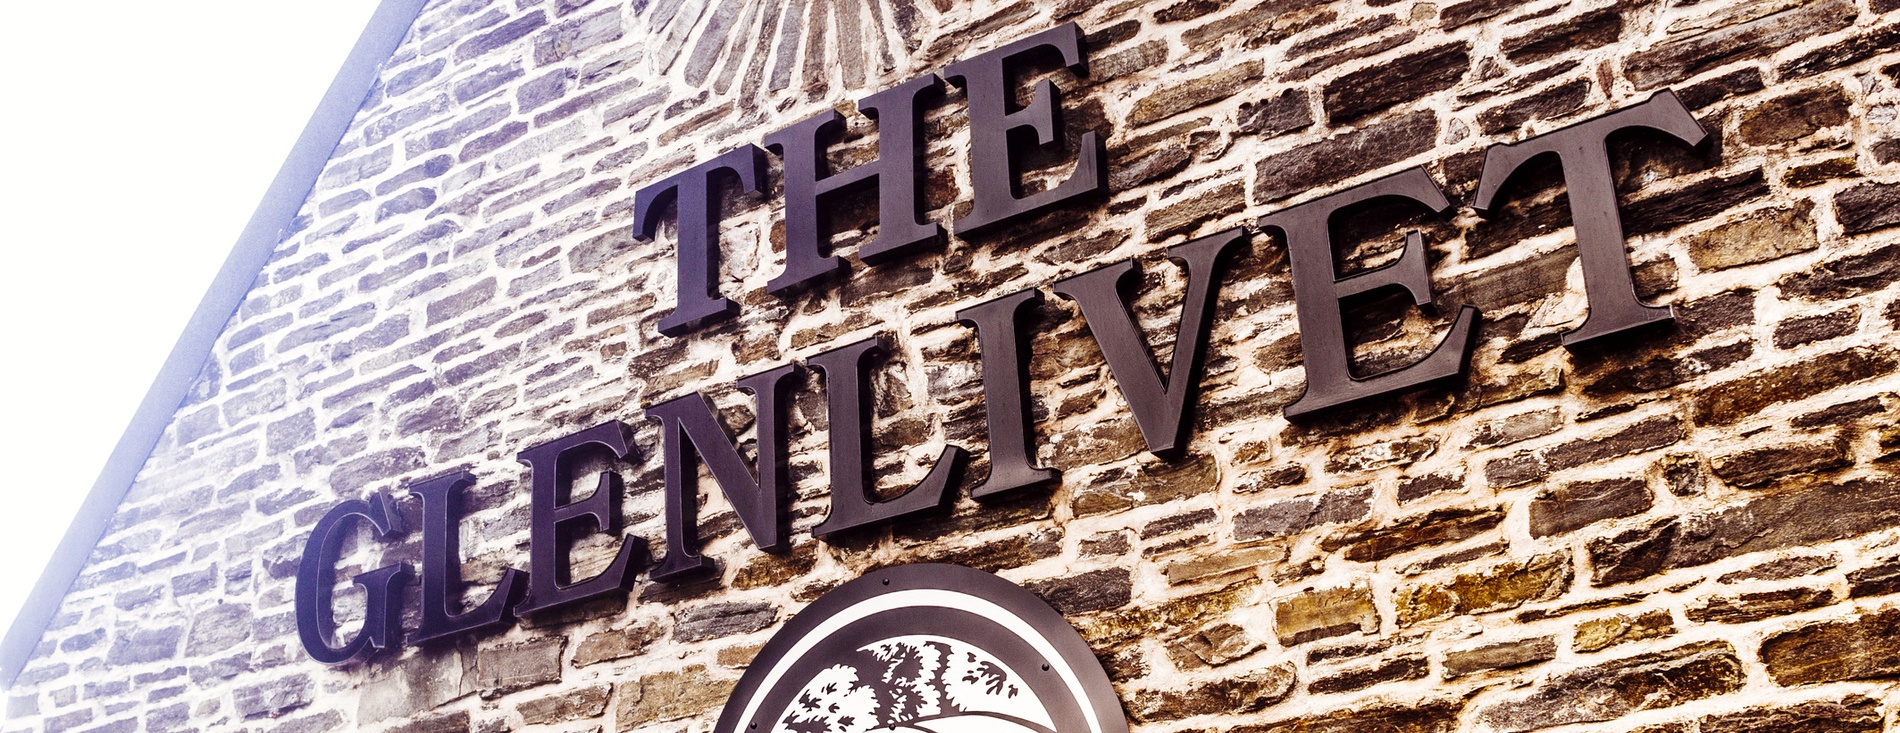 The Glenlivet Distillery